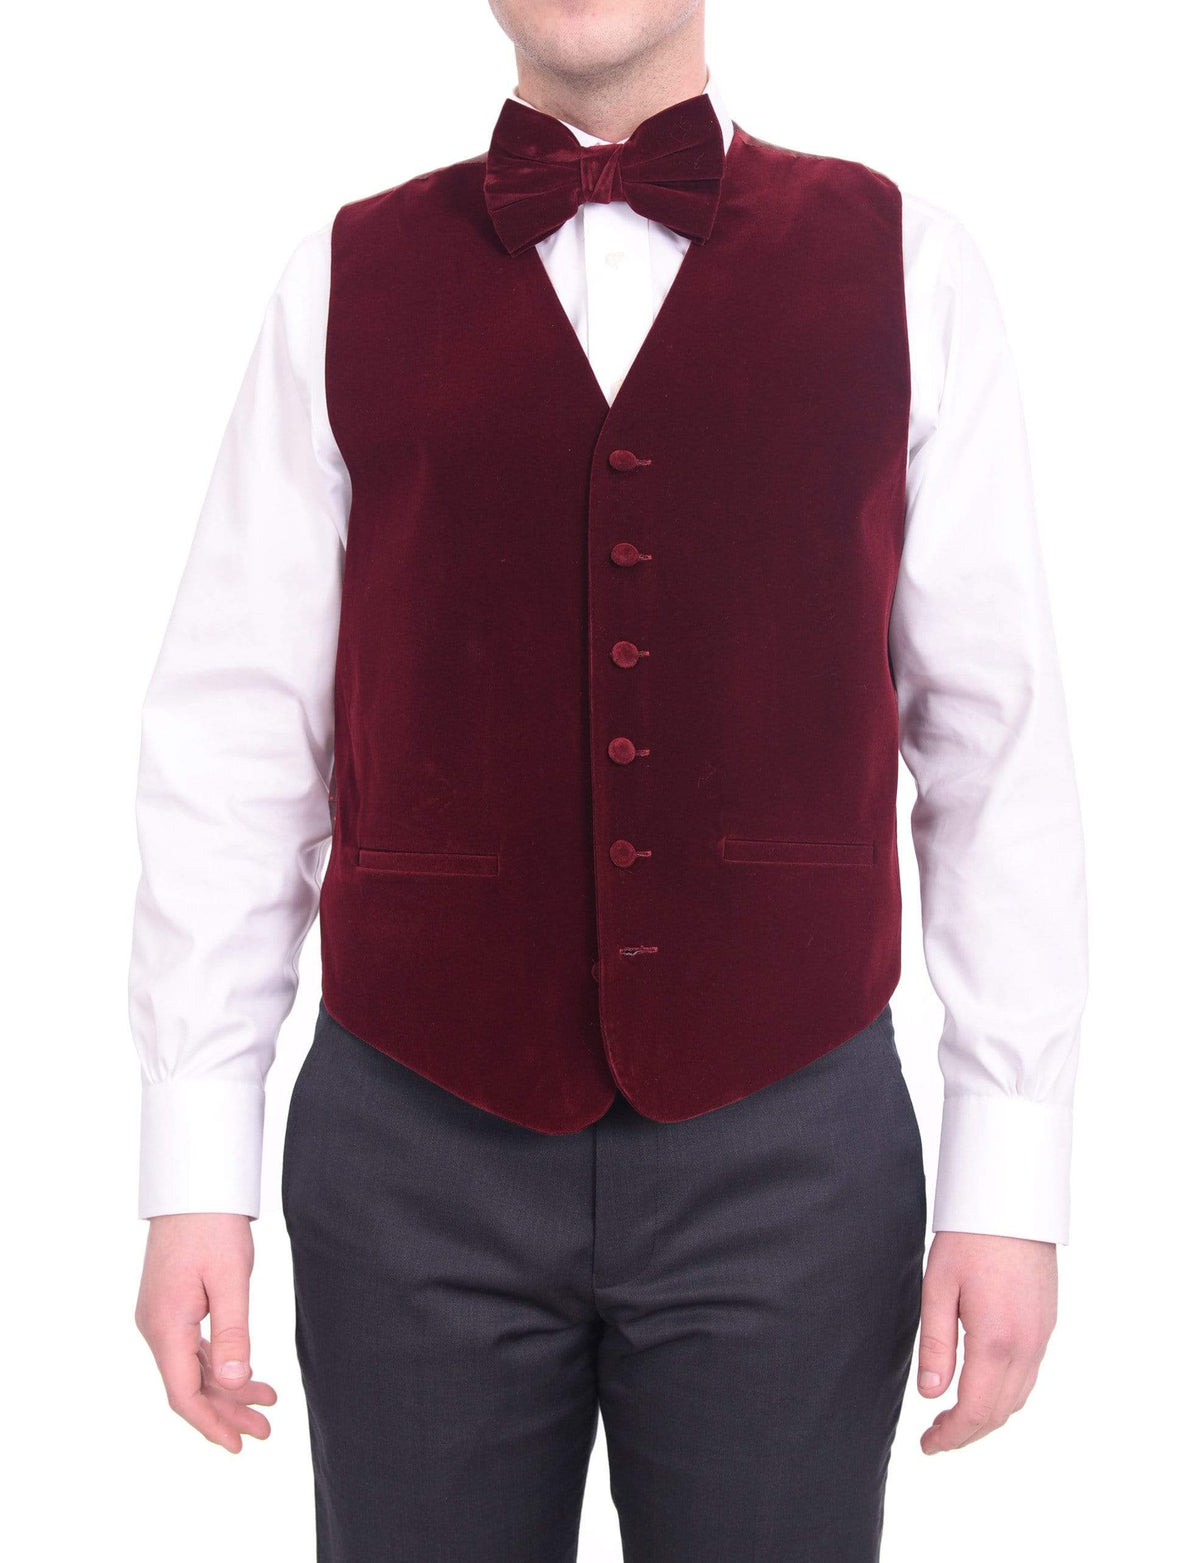 Steven Land Solid Burgundy Velvet Velour Vest With Necktie &amp; Bowtie Set - The Suit Depot